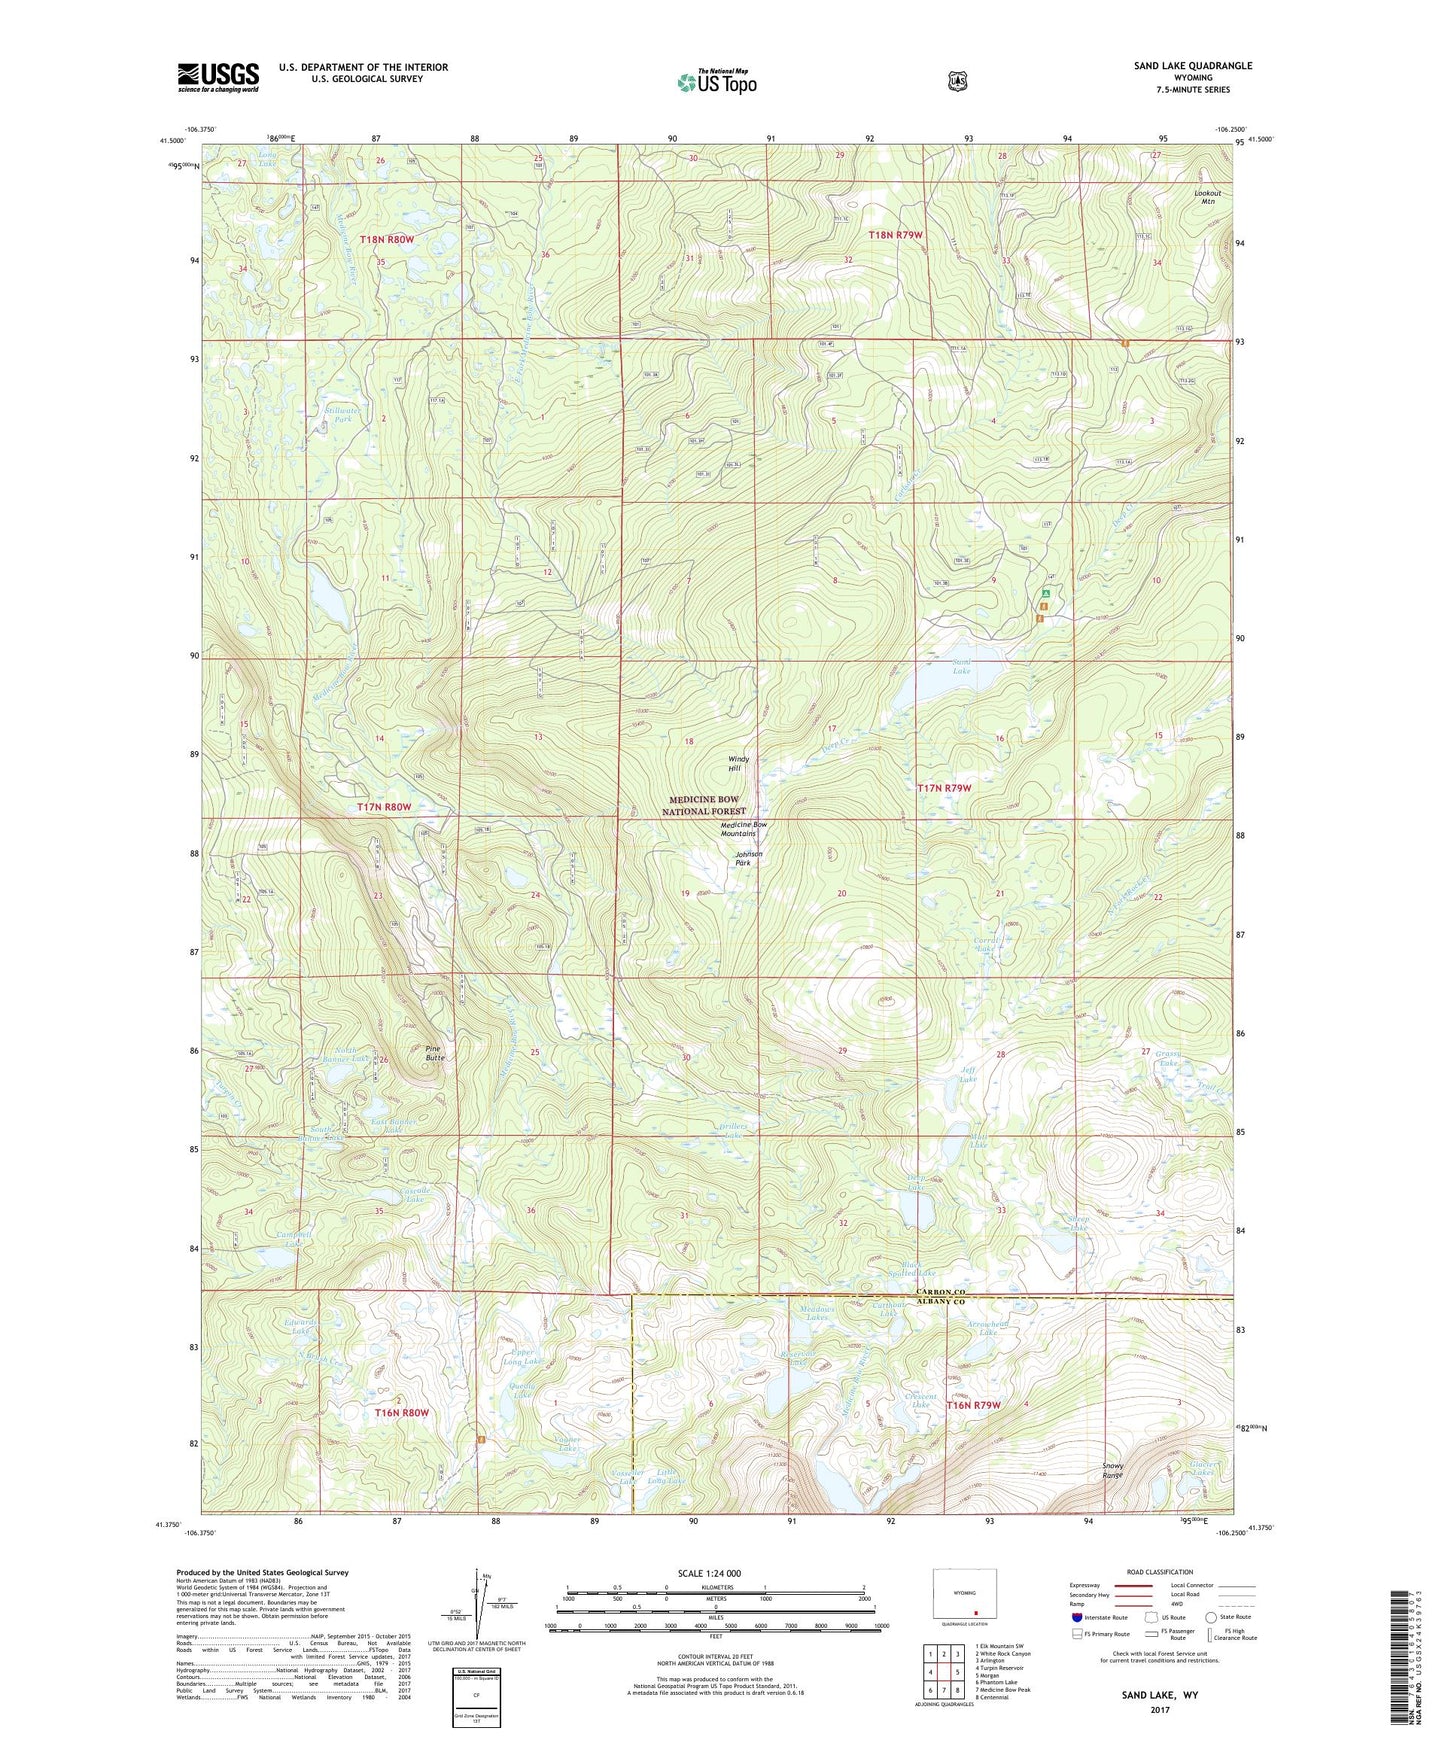 Sand Lake Wyoming US Topo Map Image